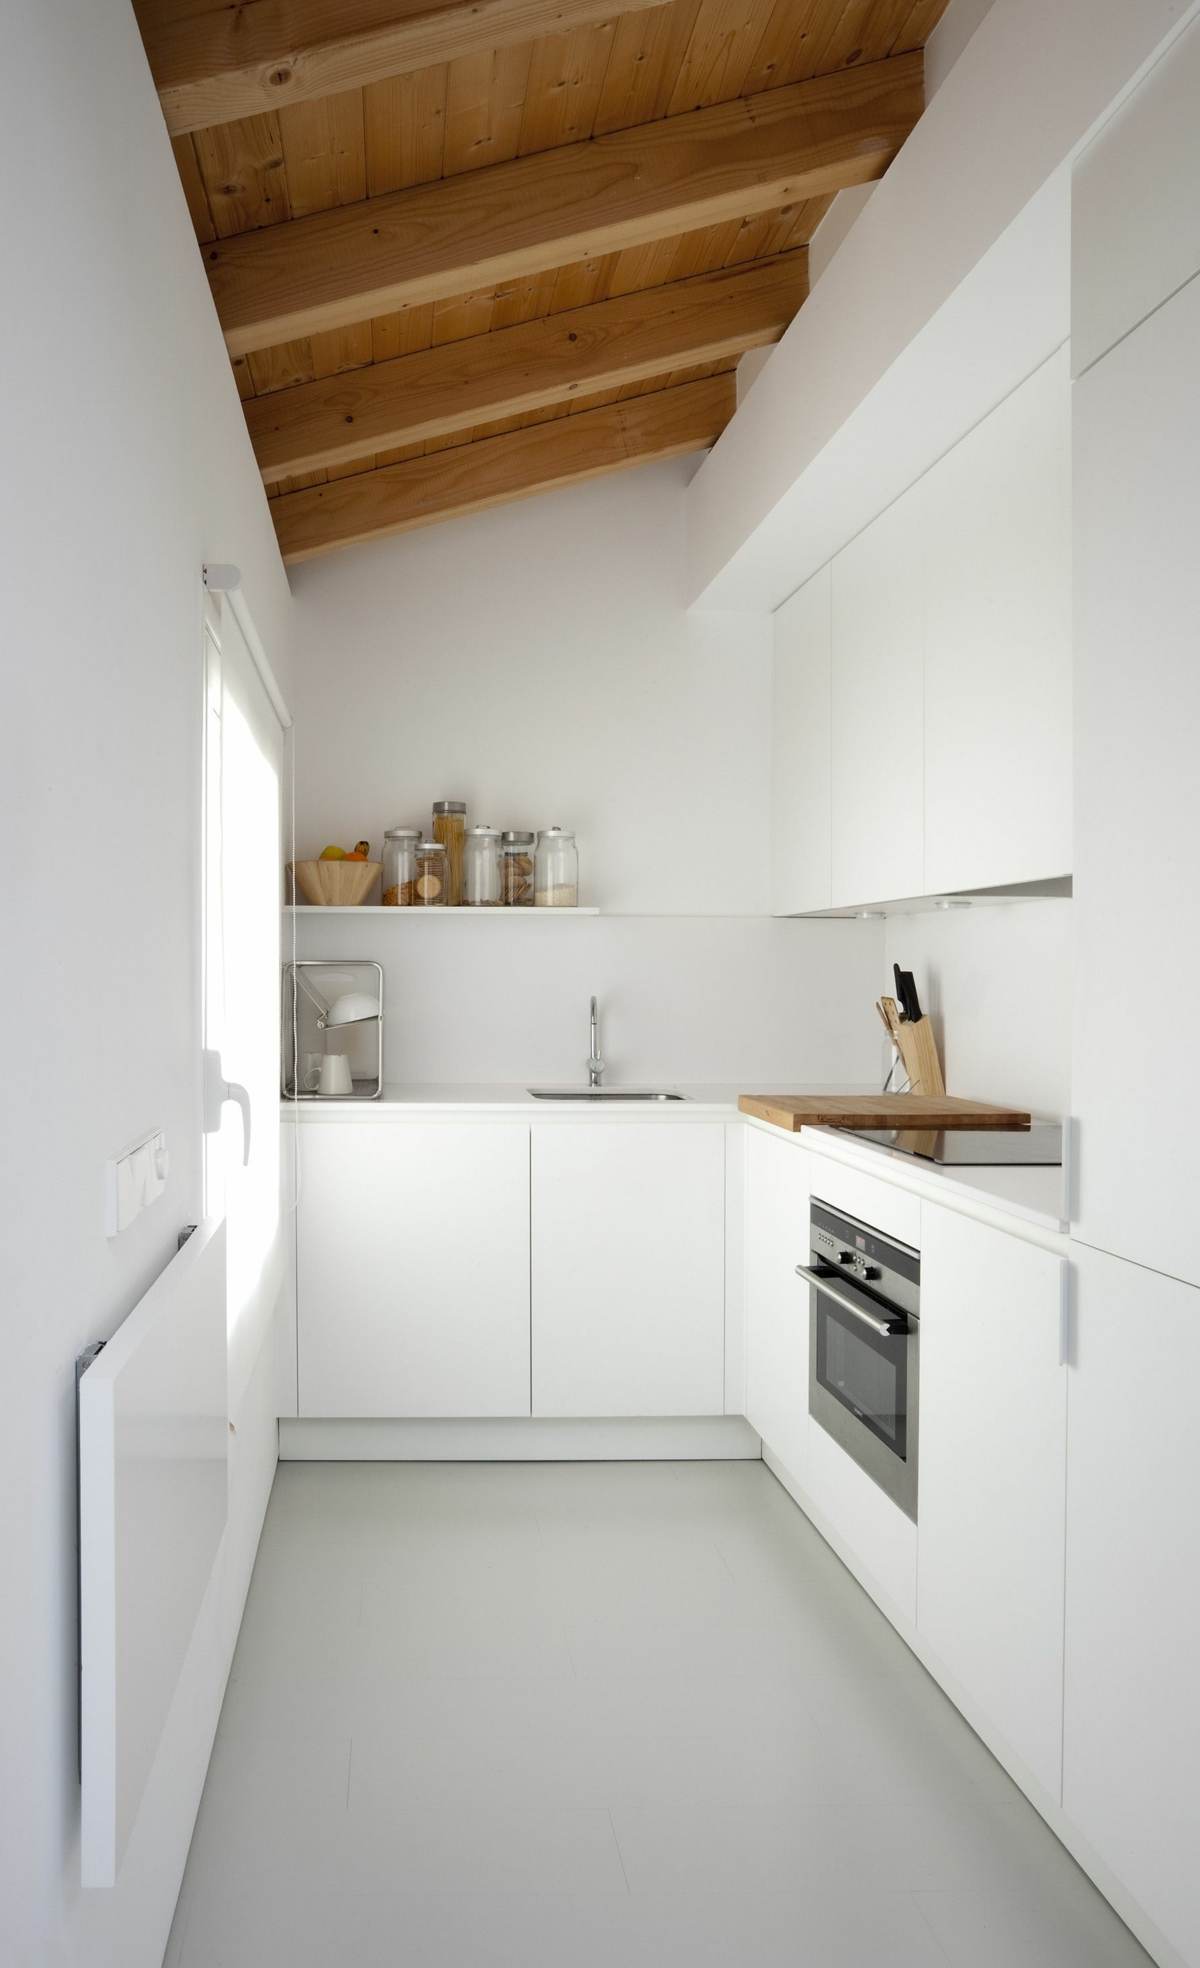 Schmale Küche im minimalistischen Stil mit Dachschräge und Balken